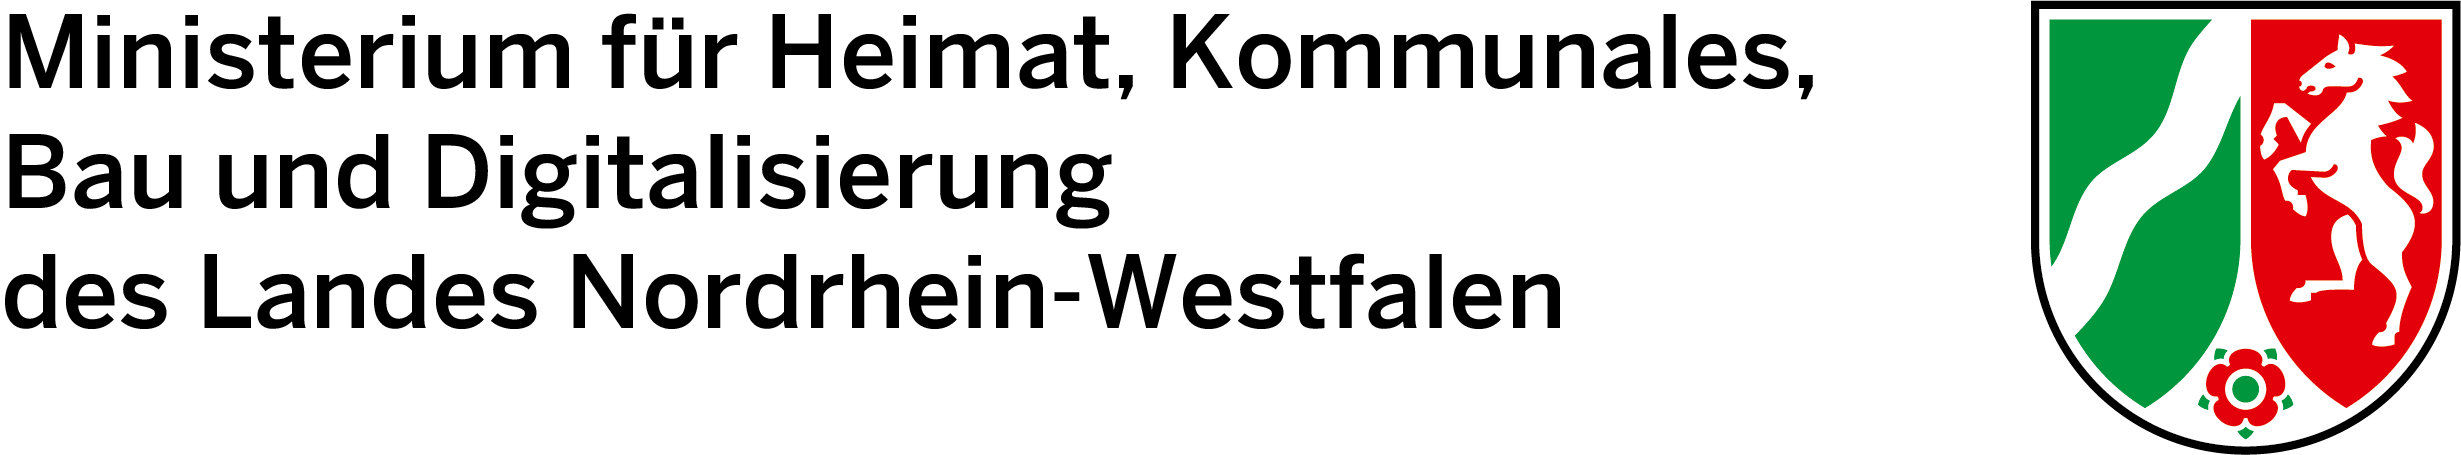 Logo MHKBG NRW